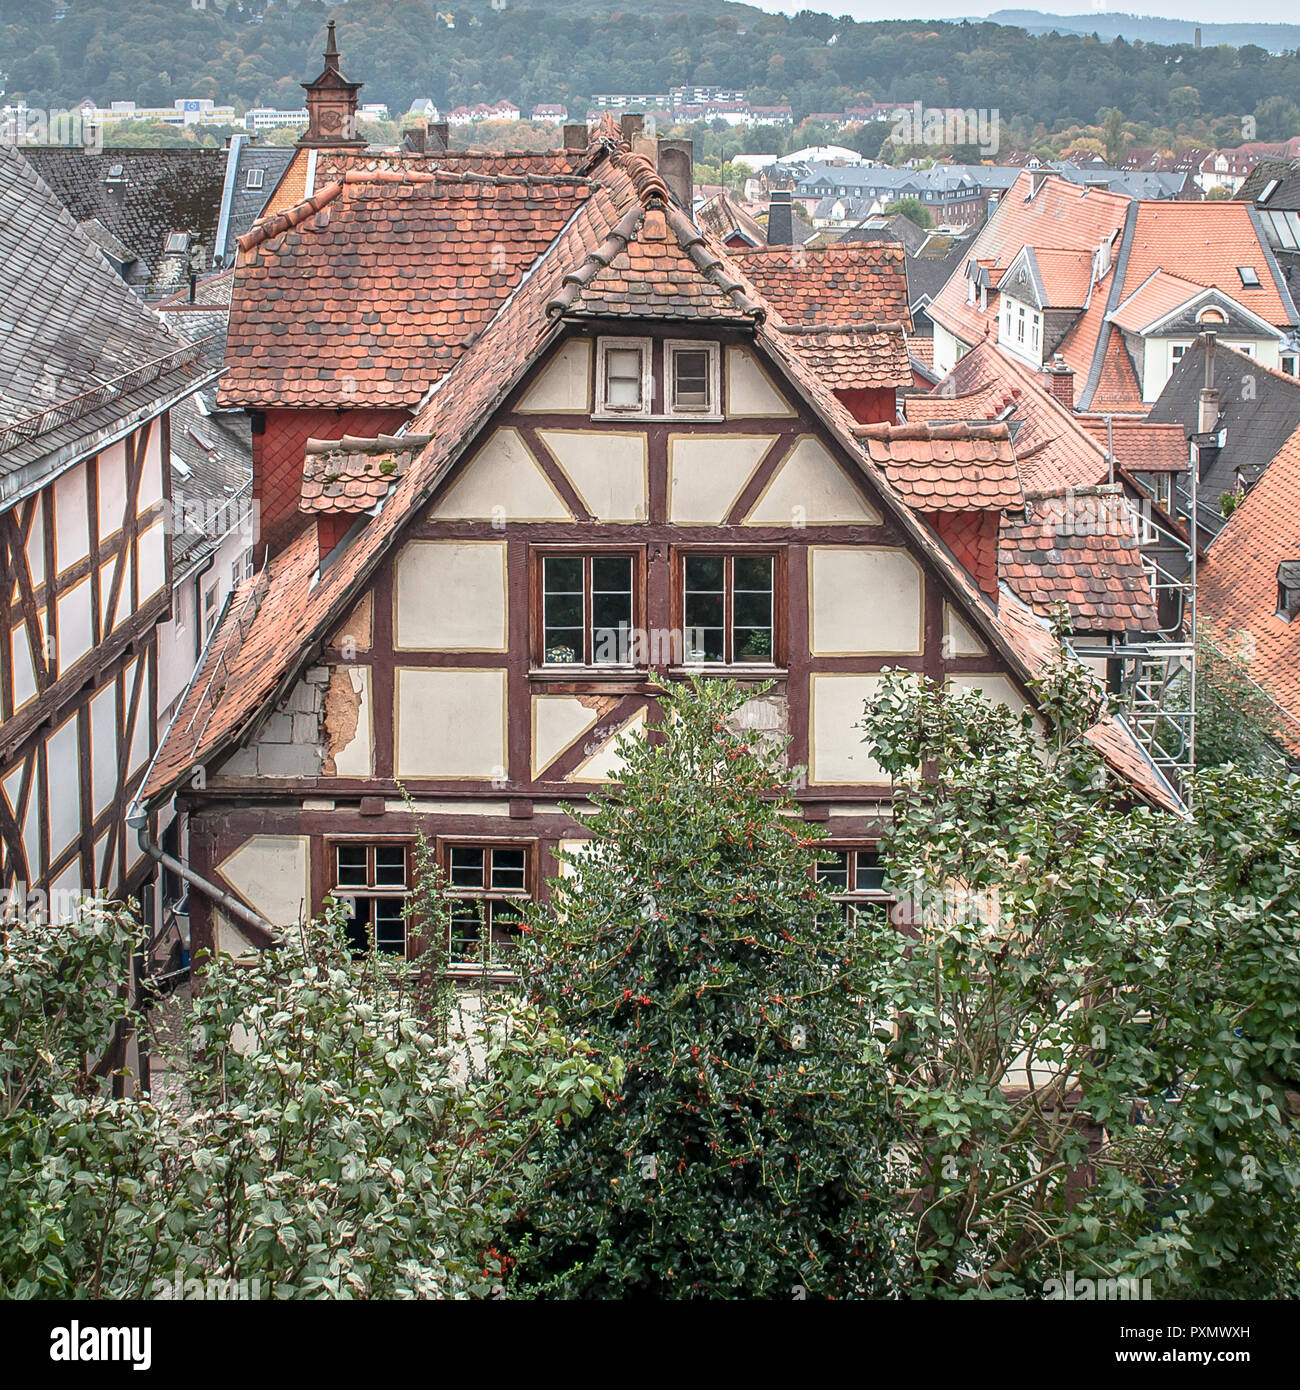 Marburg ist die Kreisstadt des mittelhessischen Landkreises Marburg-Biedenkopf und liegt an der Lahn. Stock Photo